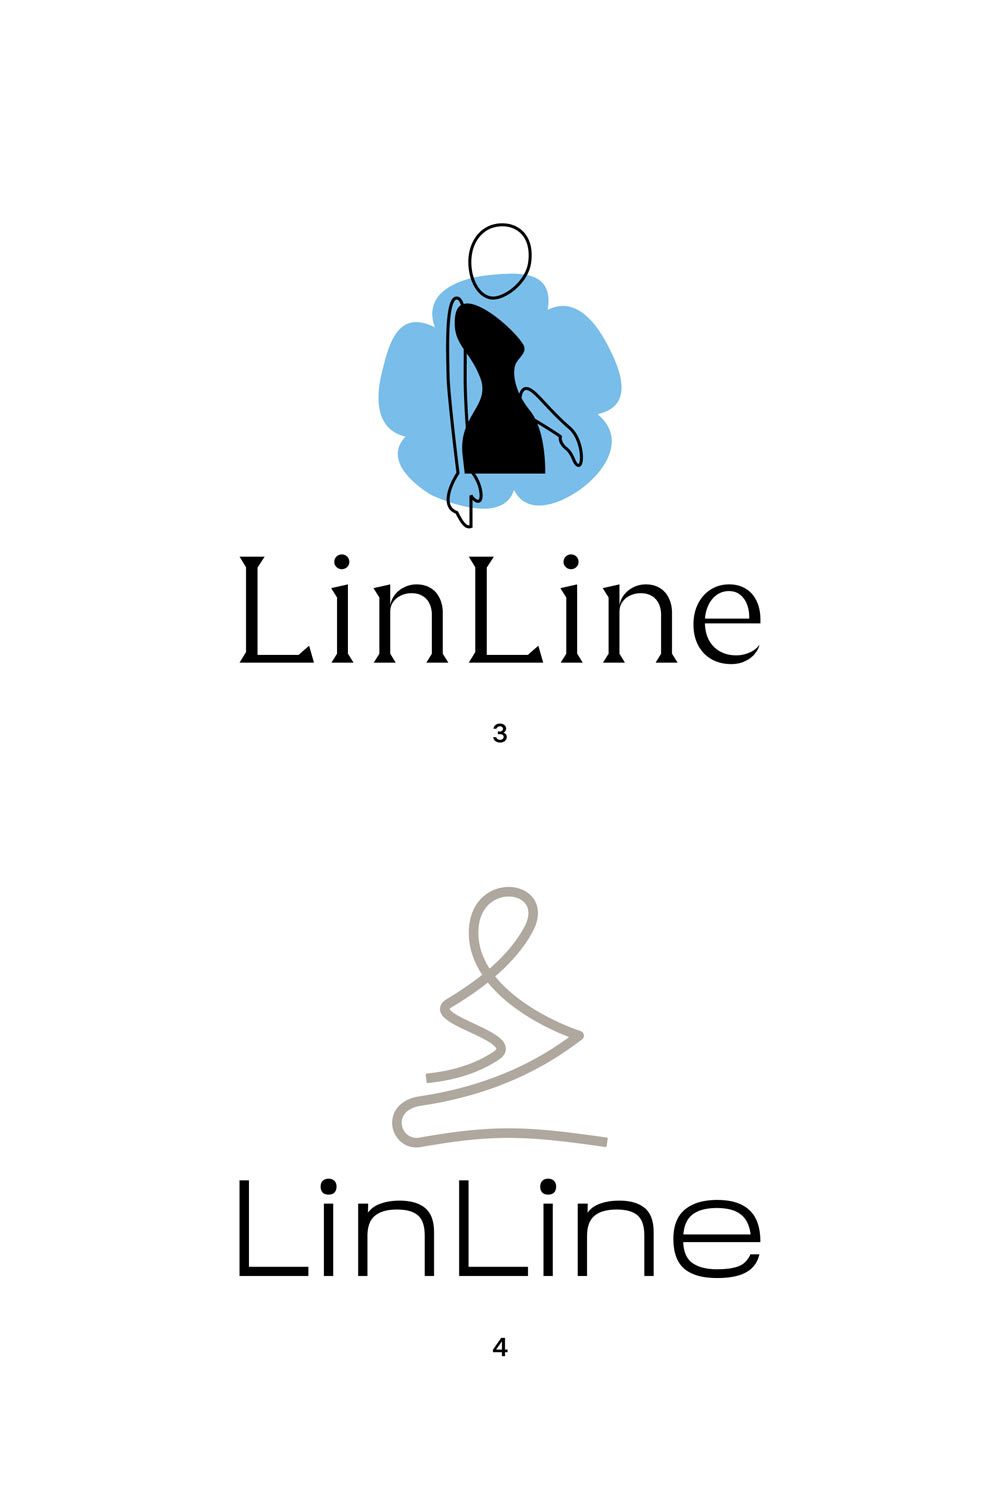 linline process 02